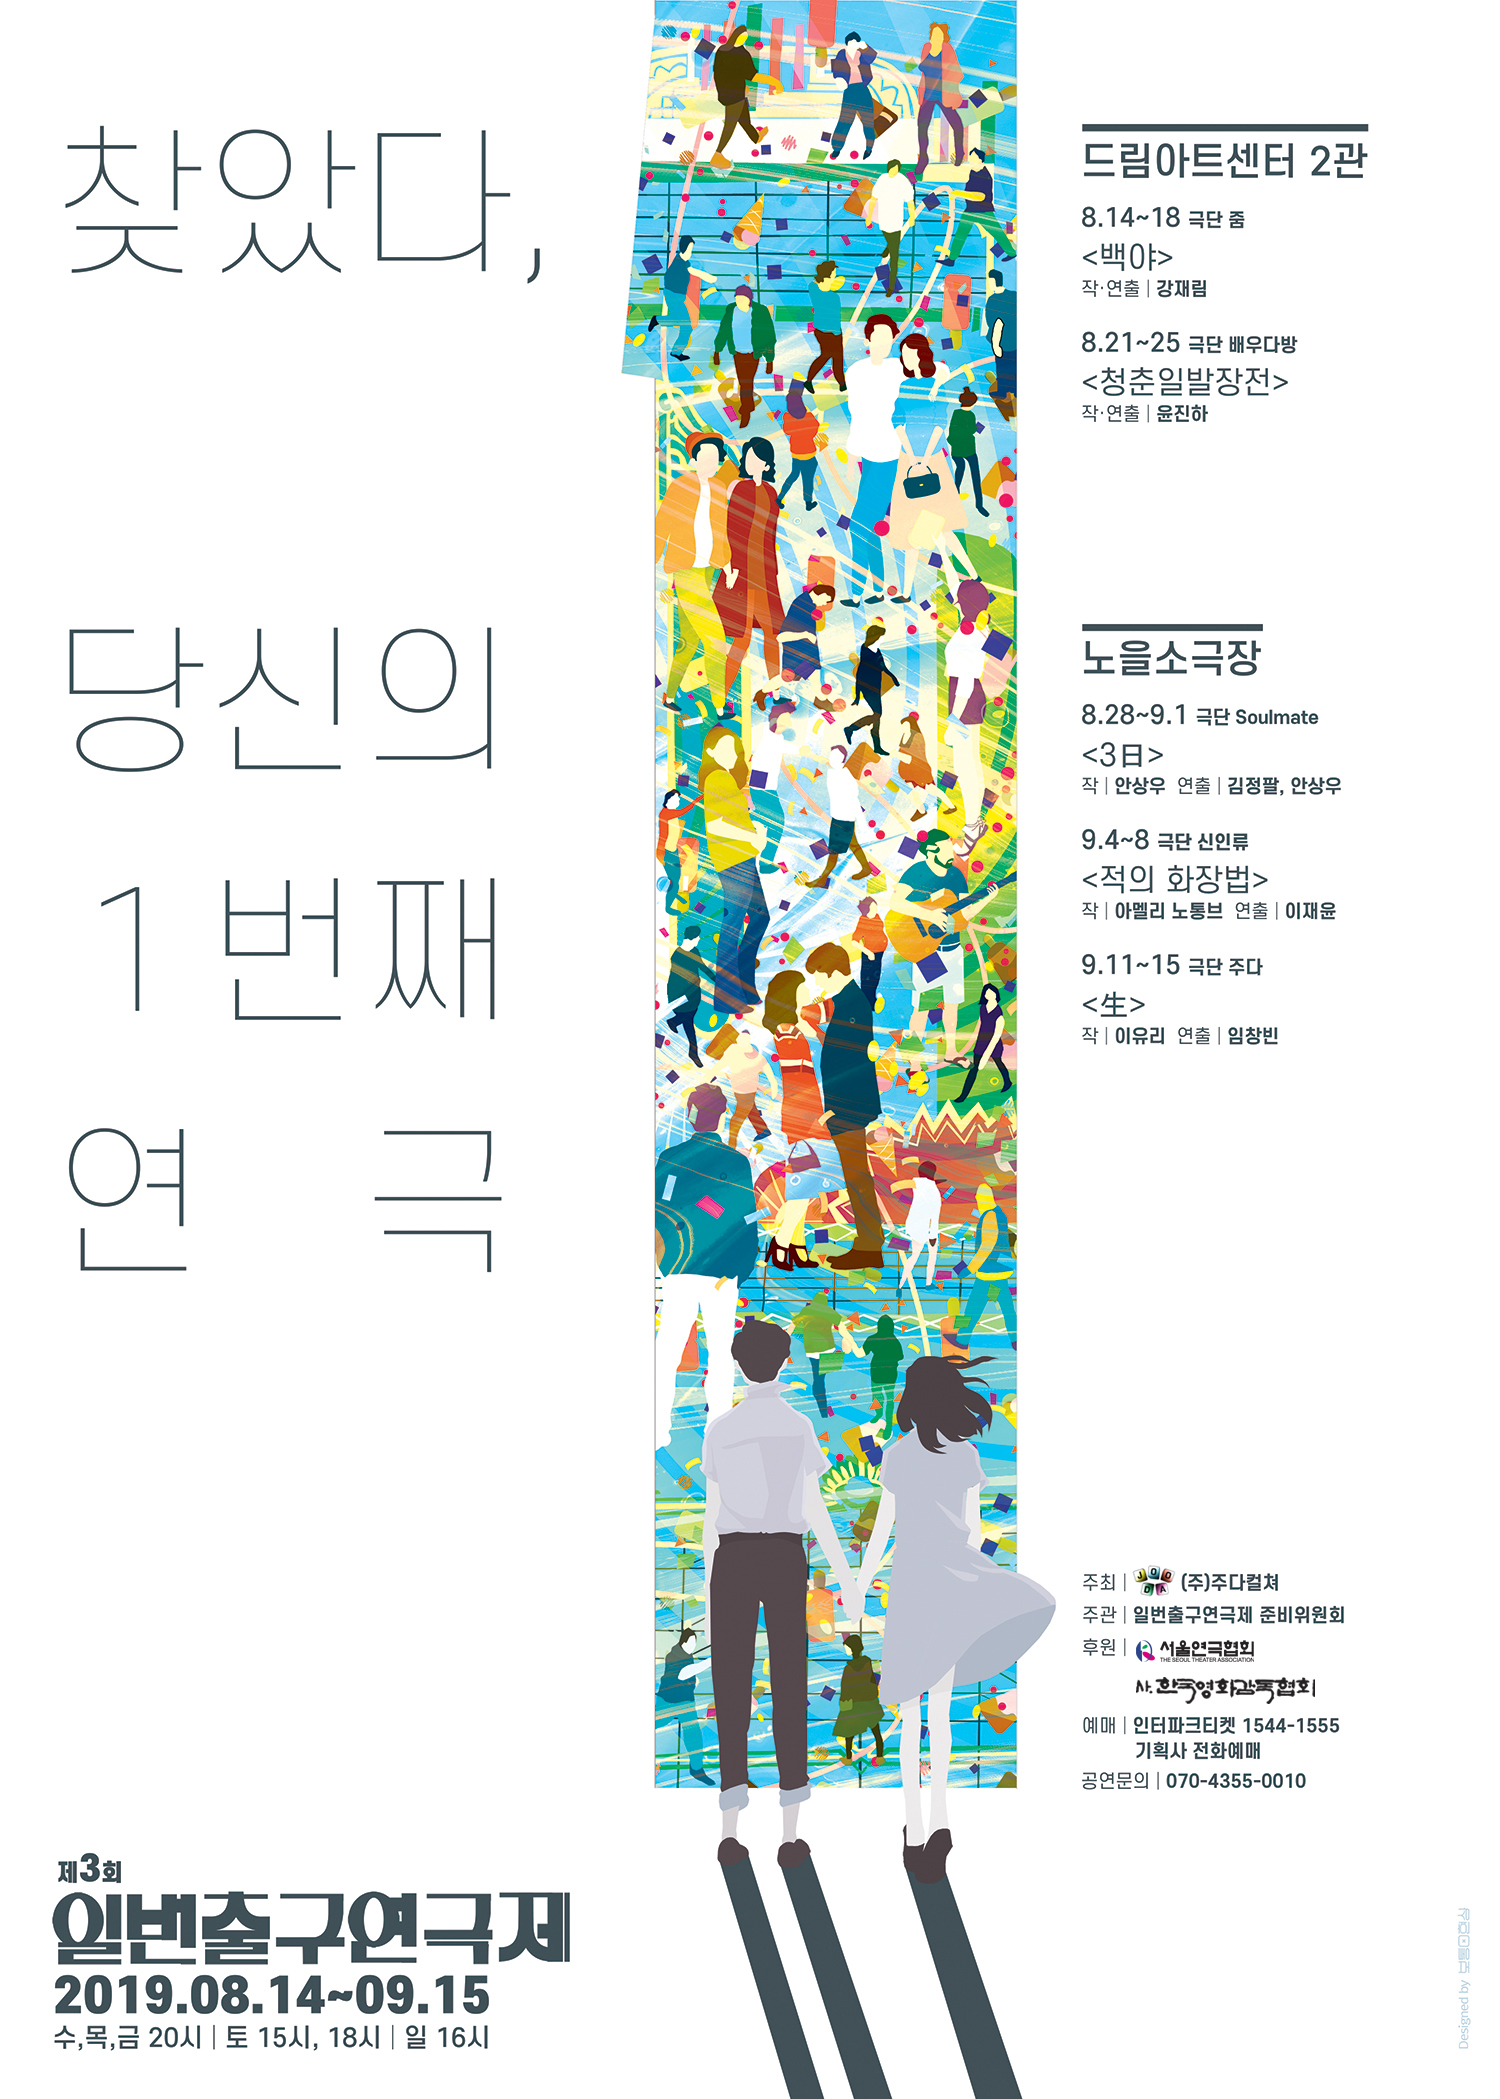 '일번출구연극제' 내달 개막 …대학로 '소극장 연극제' 잇따라 